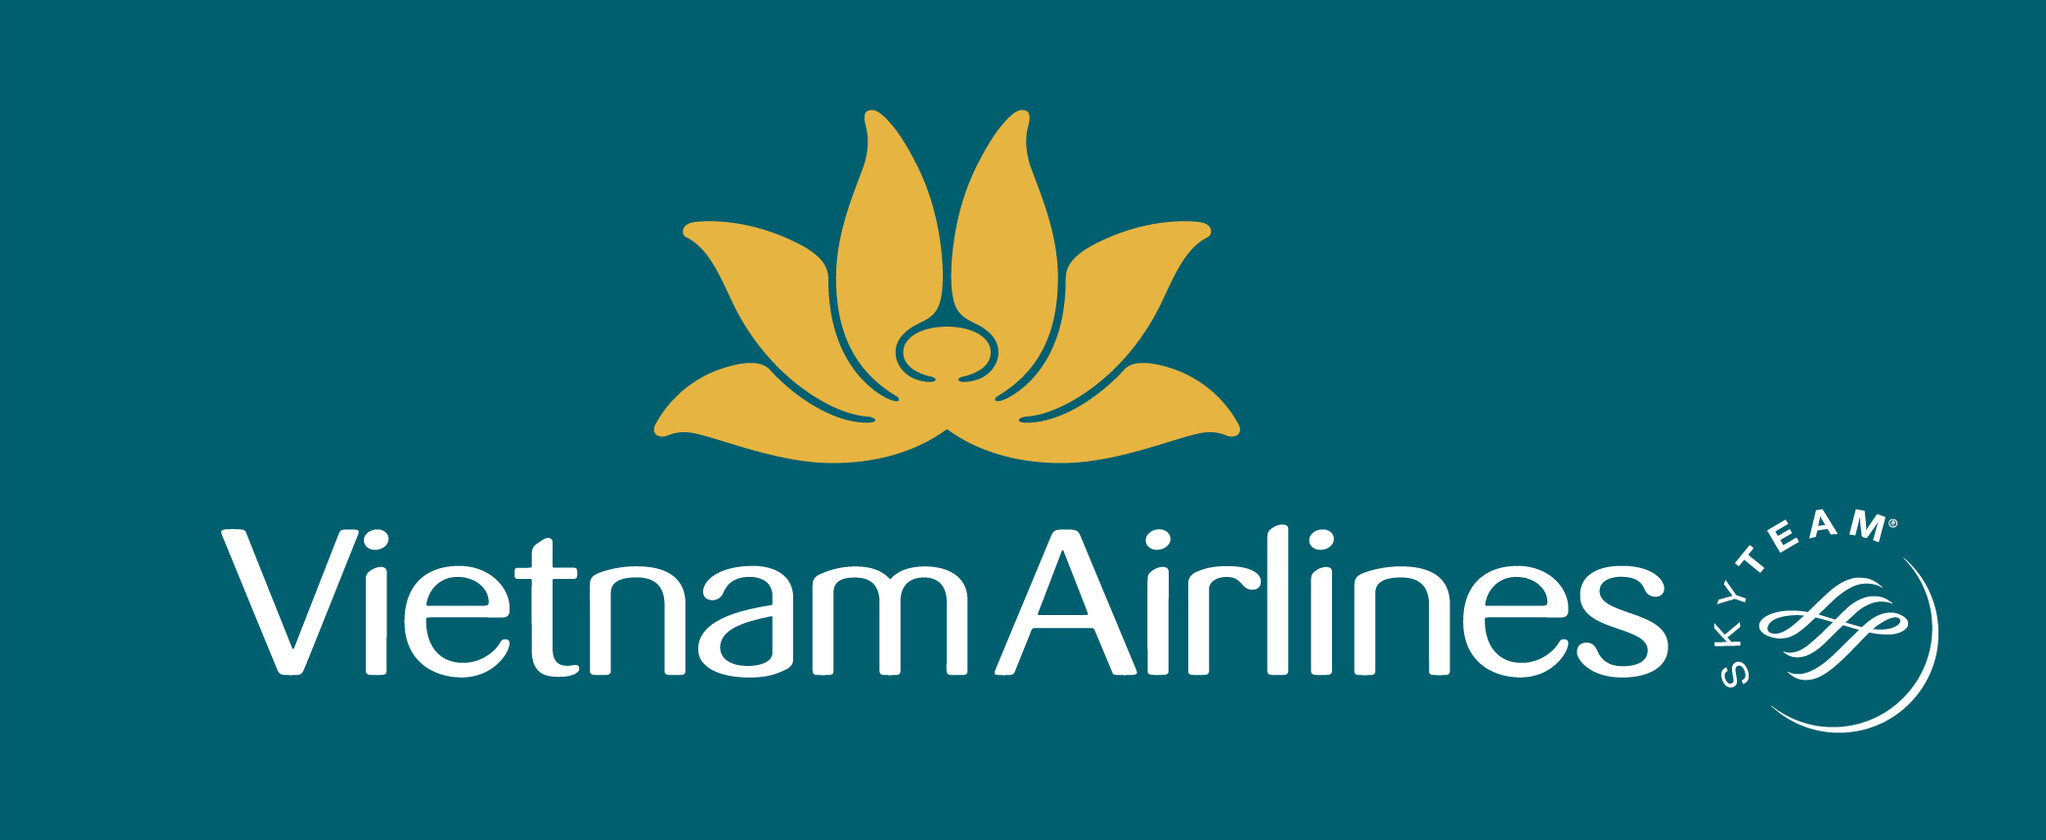 ベトナム航空、サイゴンツーリストグループとの共催イベントで各パートナーとの協力協定を結ぶ調印式を実施